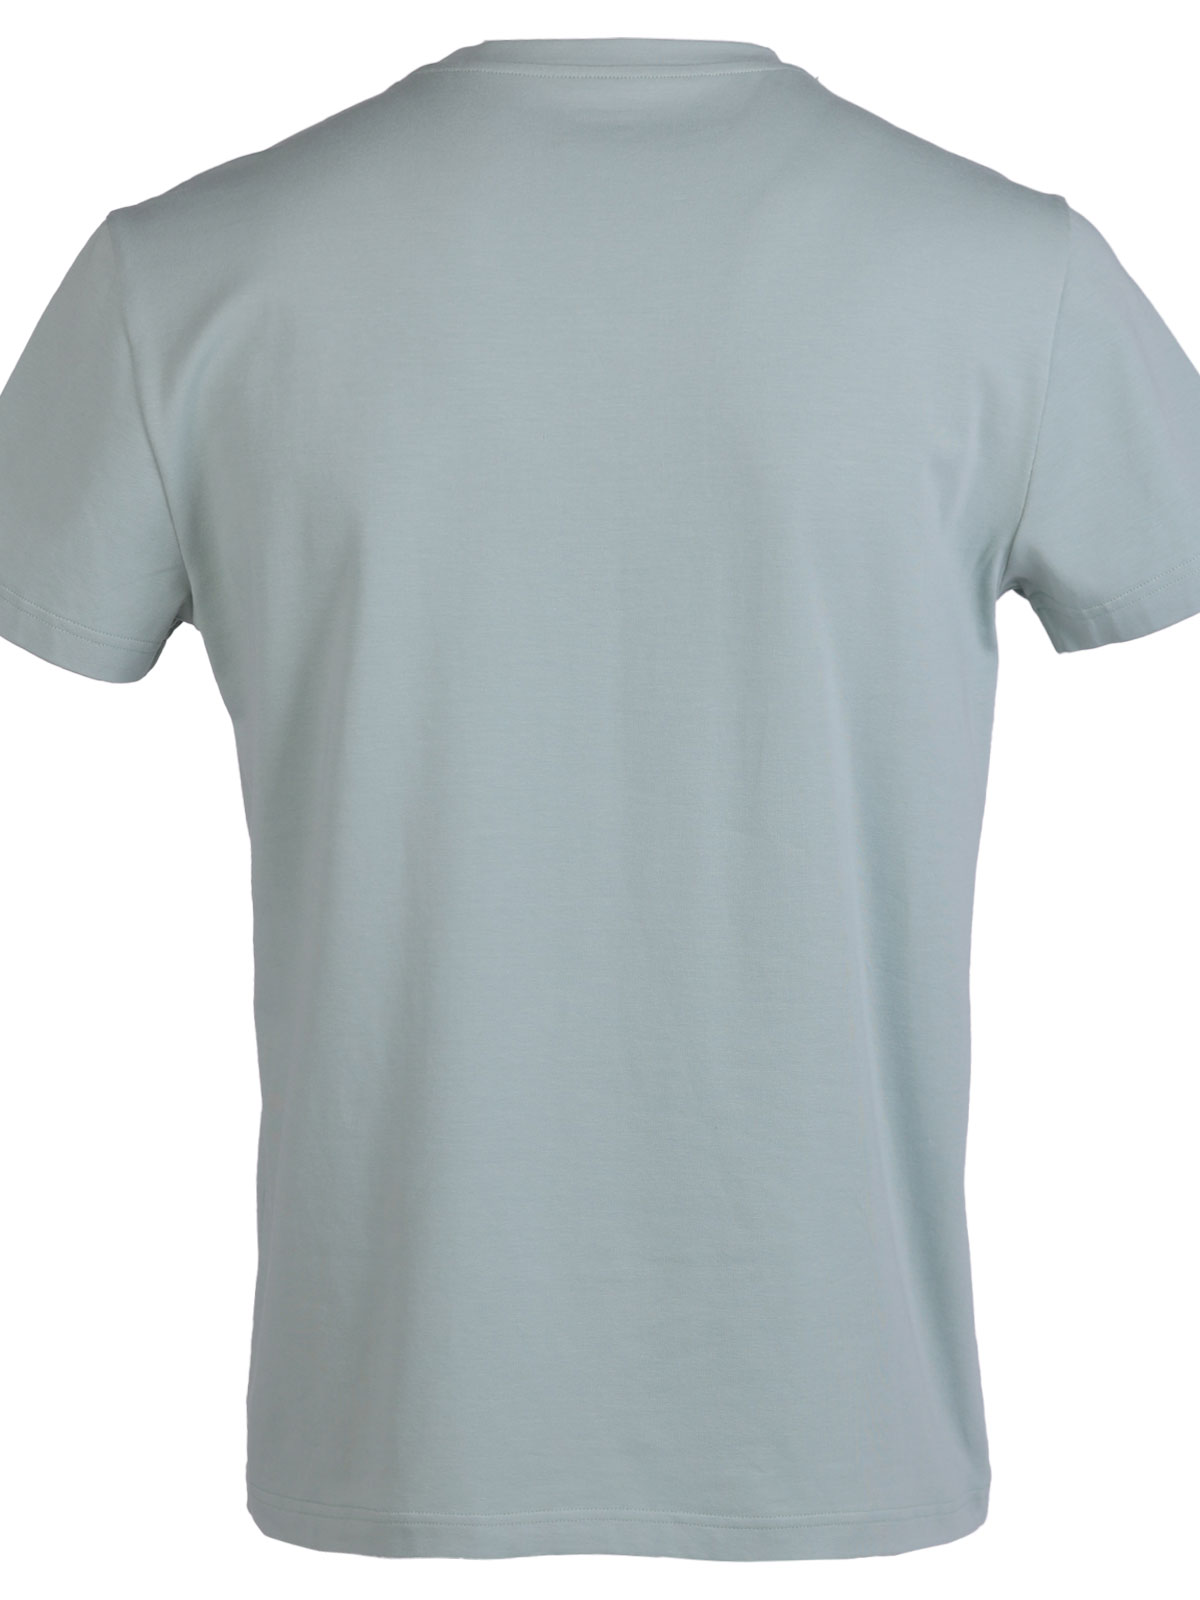 Μπλούζα σε χρώμα μέντας με στάμπα escape - 96476 € 27.56 img2